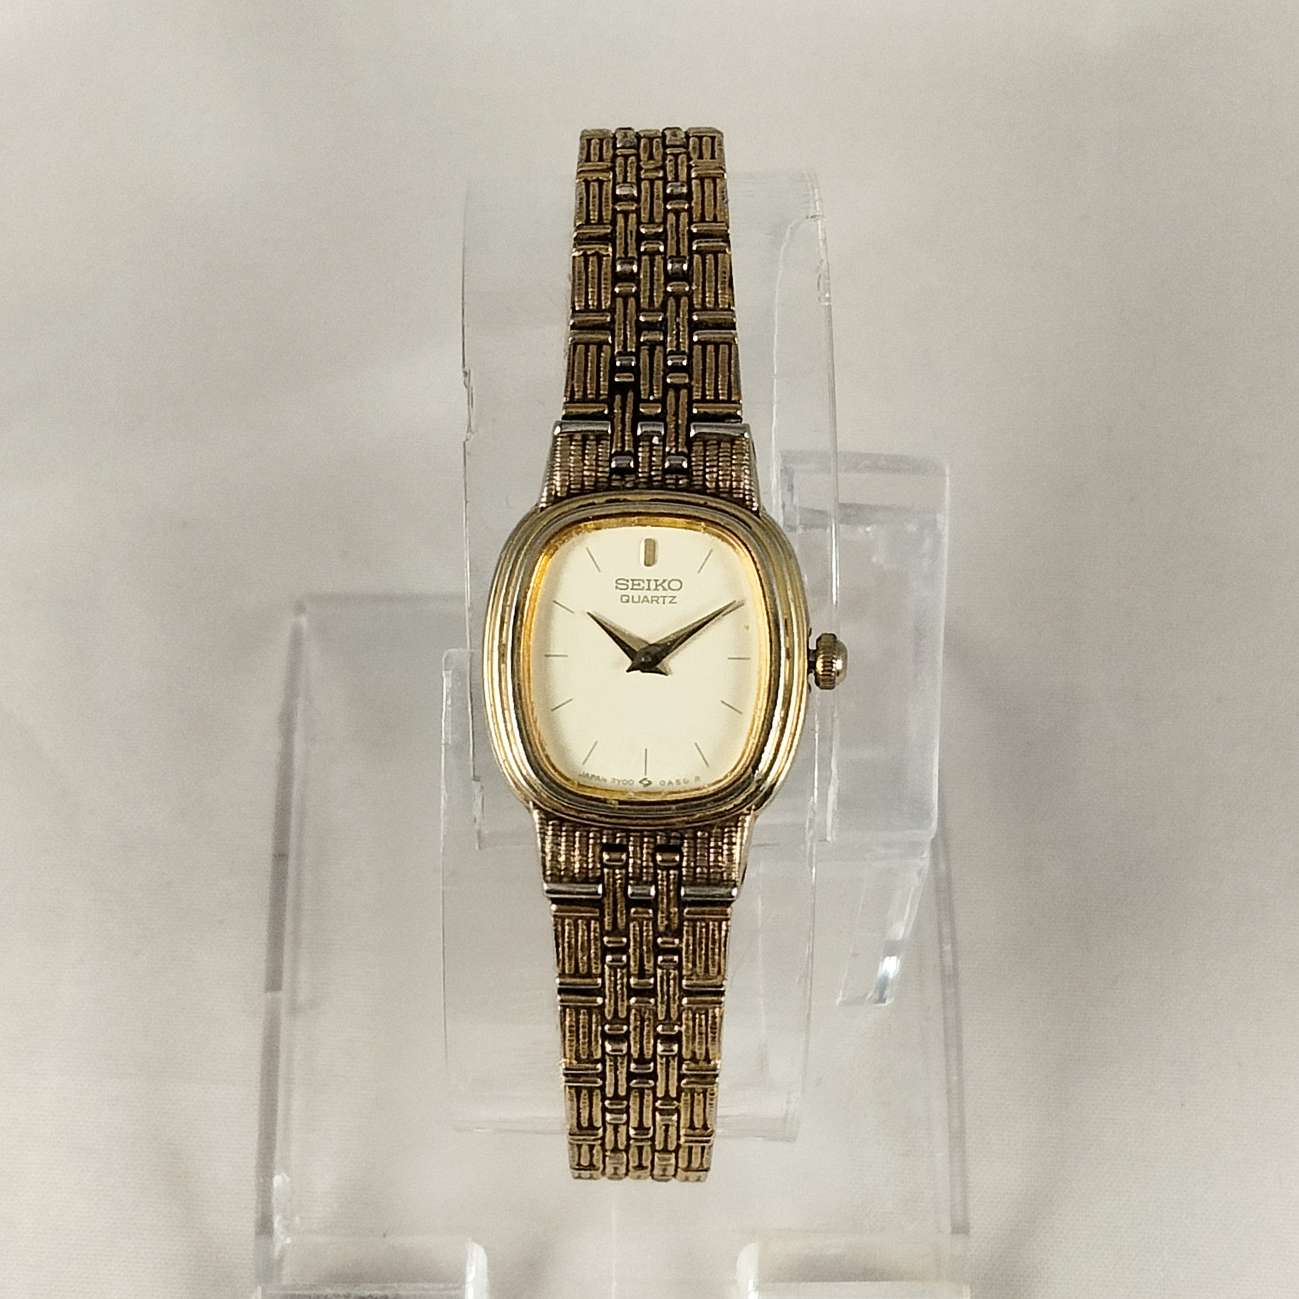 Seiko Petite Watch, Gold Tone, Textured Bracelet Strap